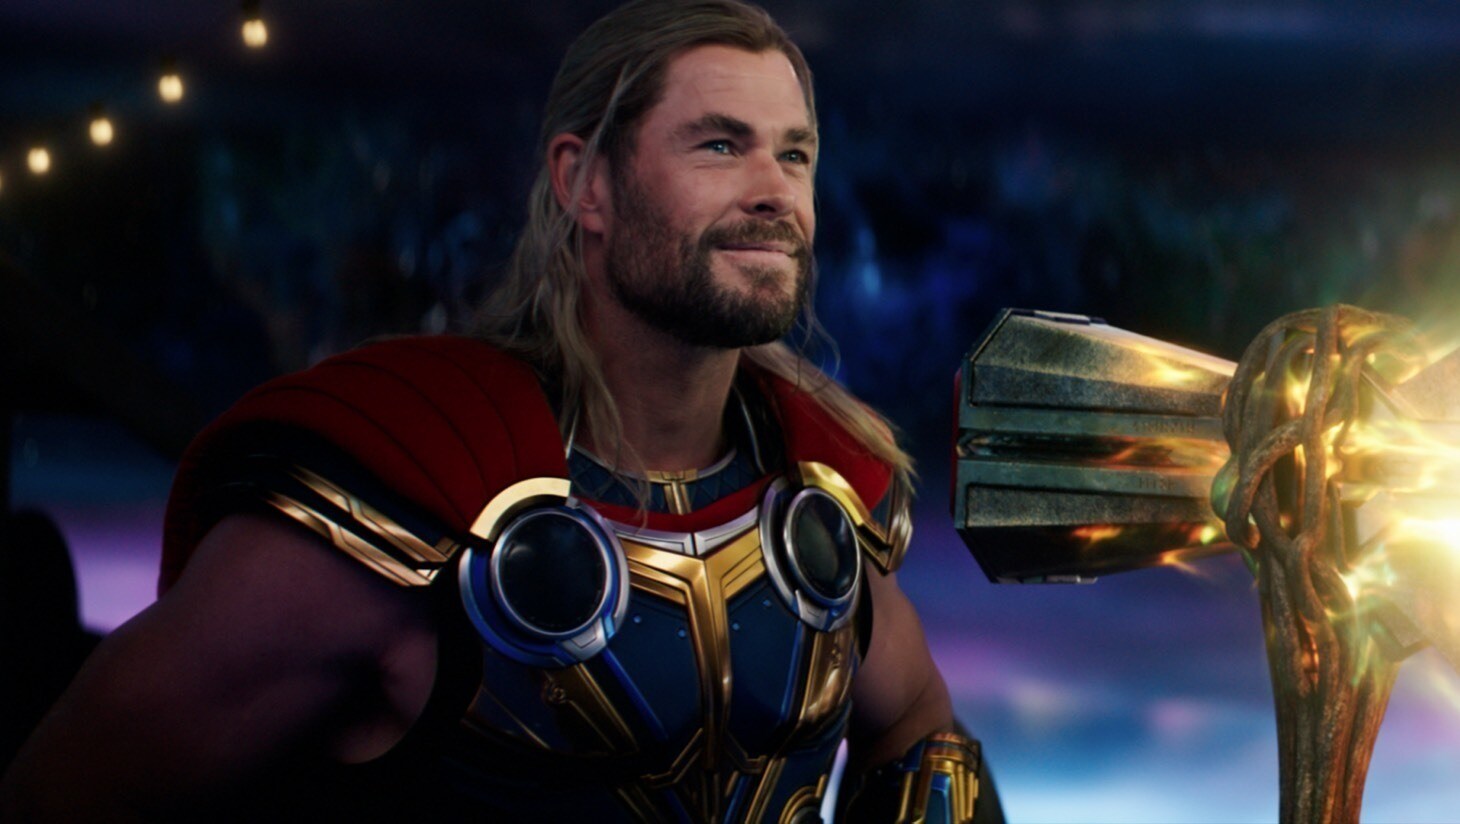 Thor: Love and Thunder-teasertrailer 1